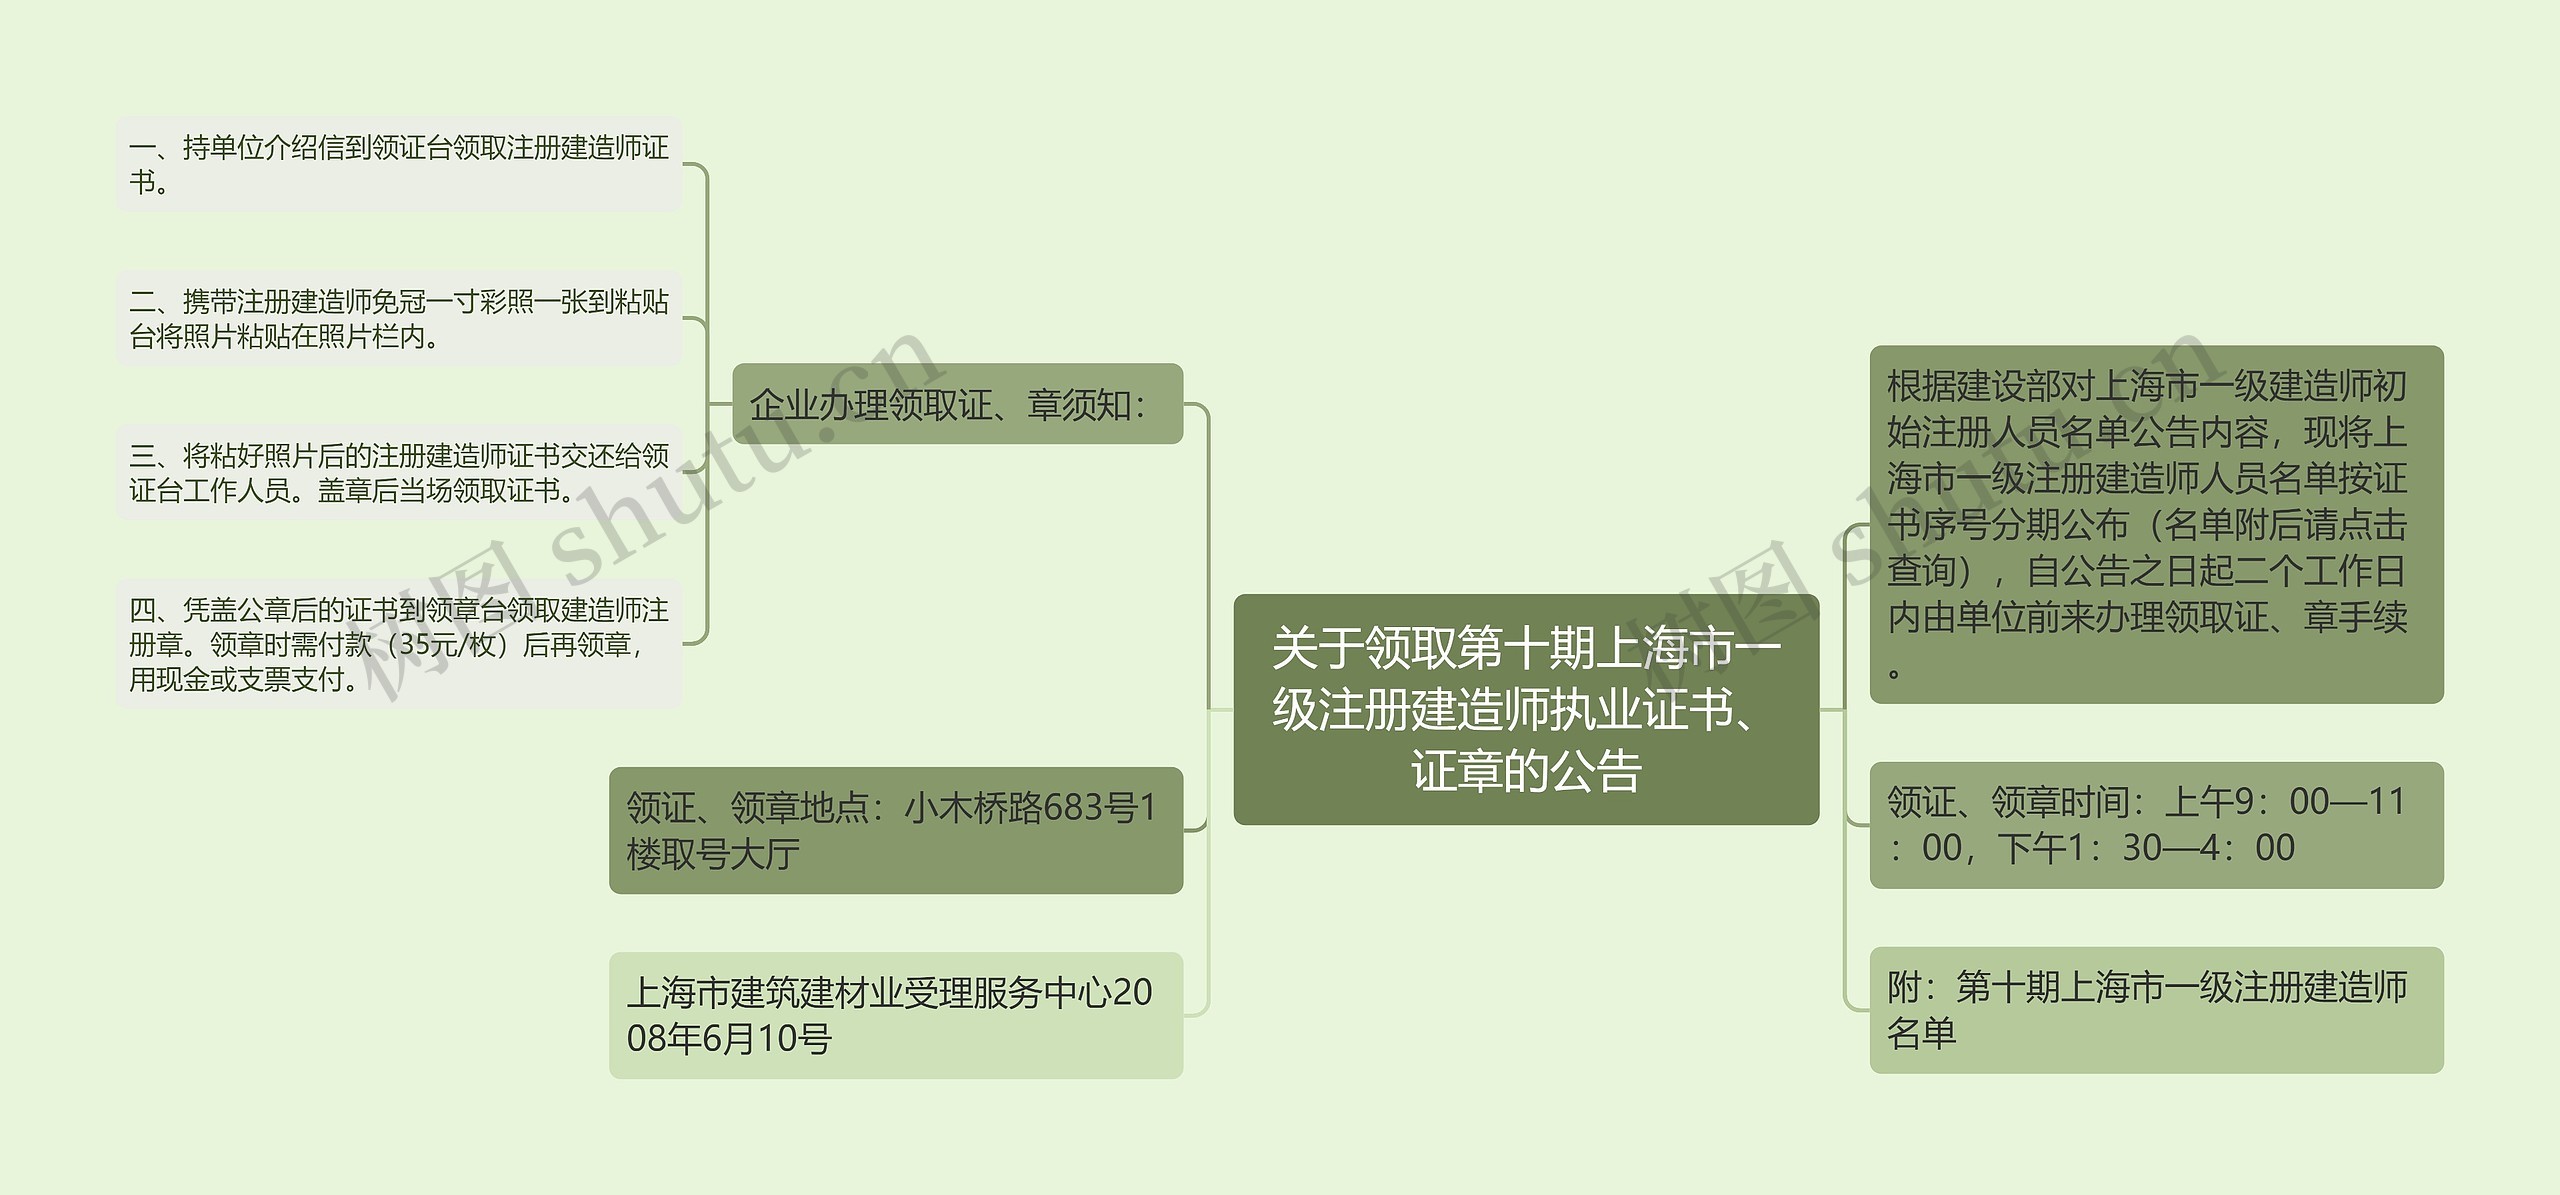 关于领取第十期上海市一级注册建造师执业证书、证章的公告